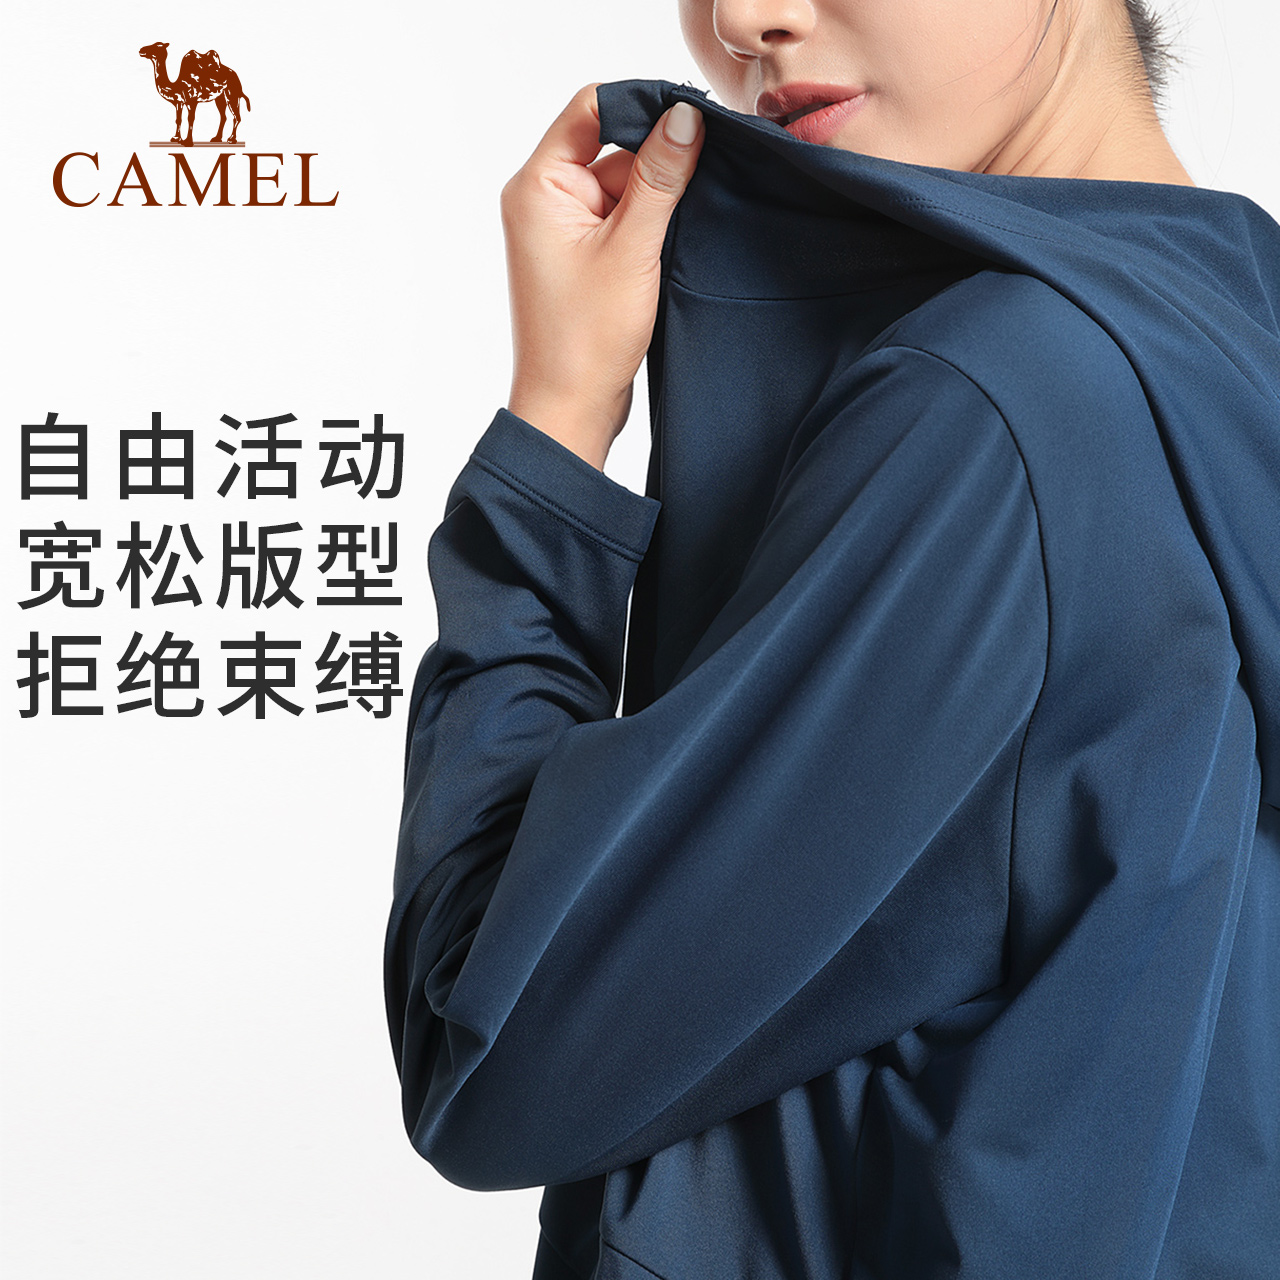 CAMEL 骆驼 瑜伽服薄绒运动服外套女款春季健身服长袖中长款跑步上衣宽松 10